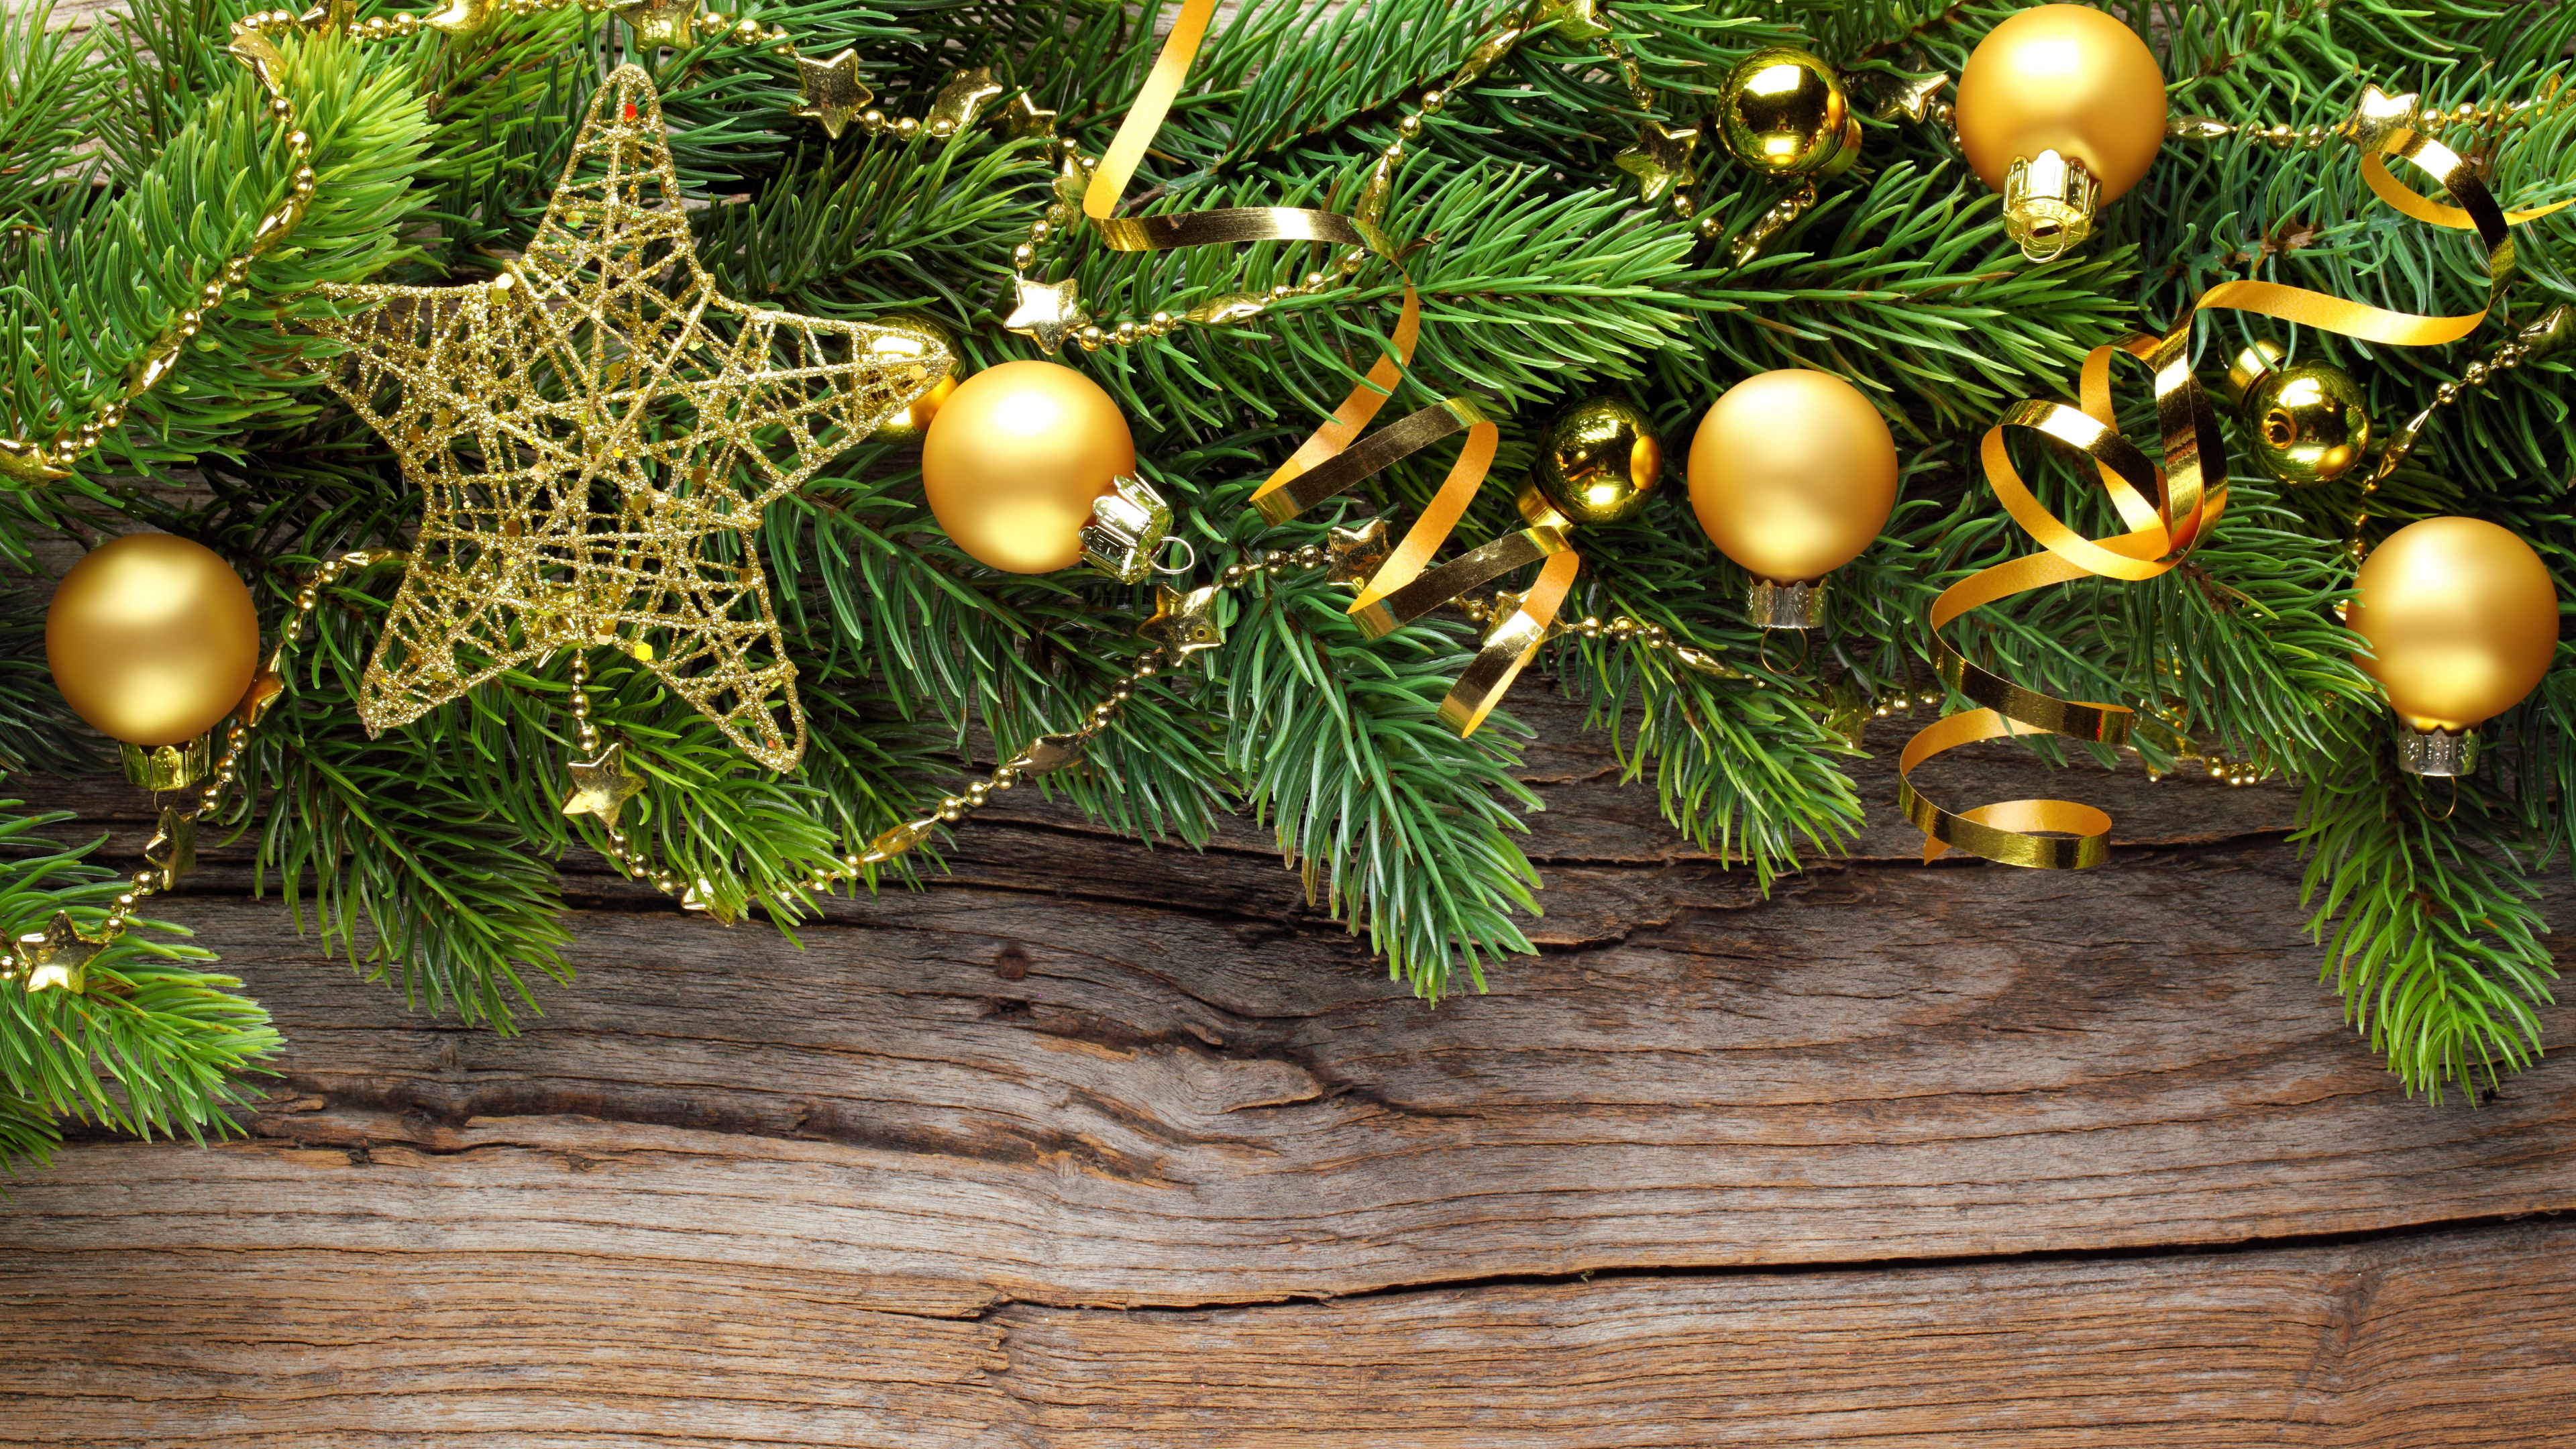 圣诞节那天, 圣诞树, 新的一年, 假日, 圣诞装饰 壁纸 3840x2160 允许